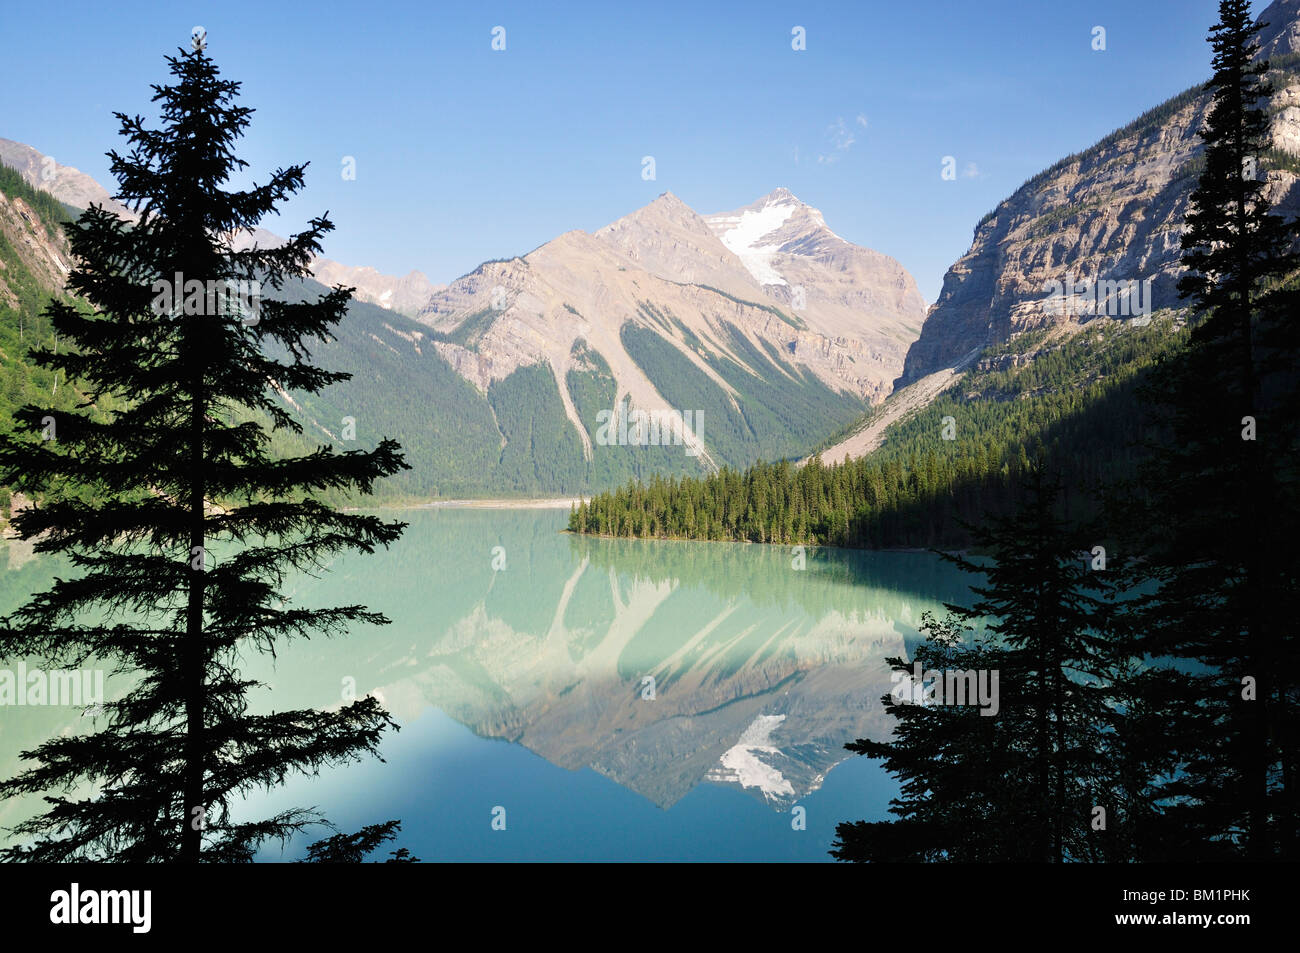 Kinney lago e montagna Whitehorn, Monte Robson Provincial Park, British Columbia, Canada, America del Nord Foto Stock